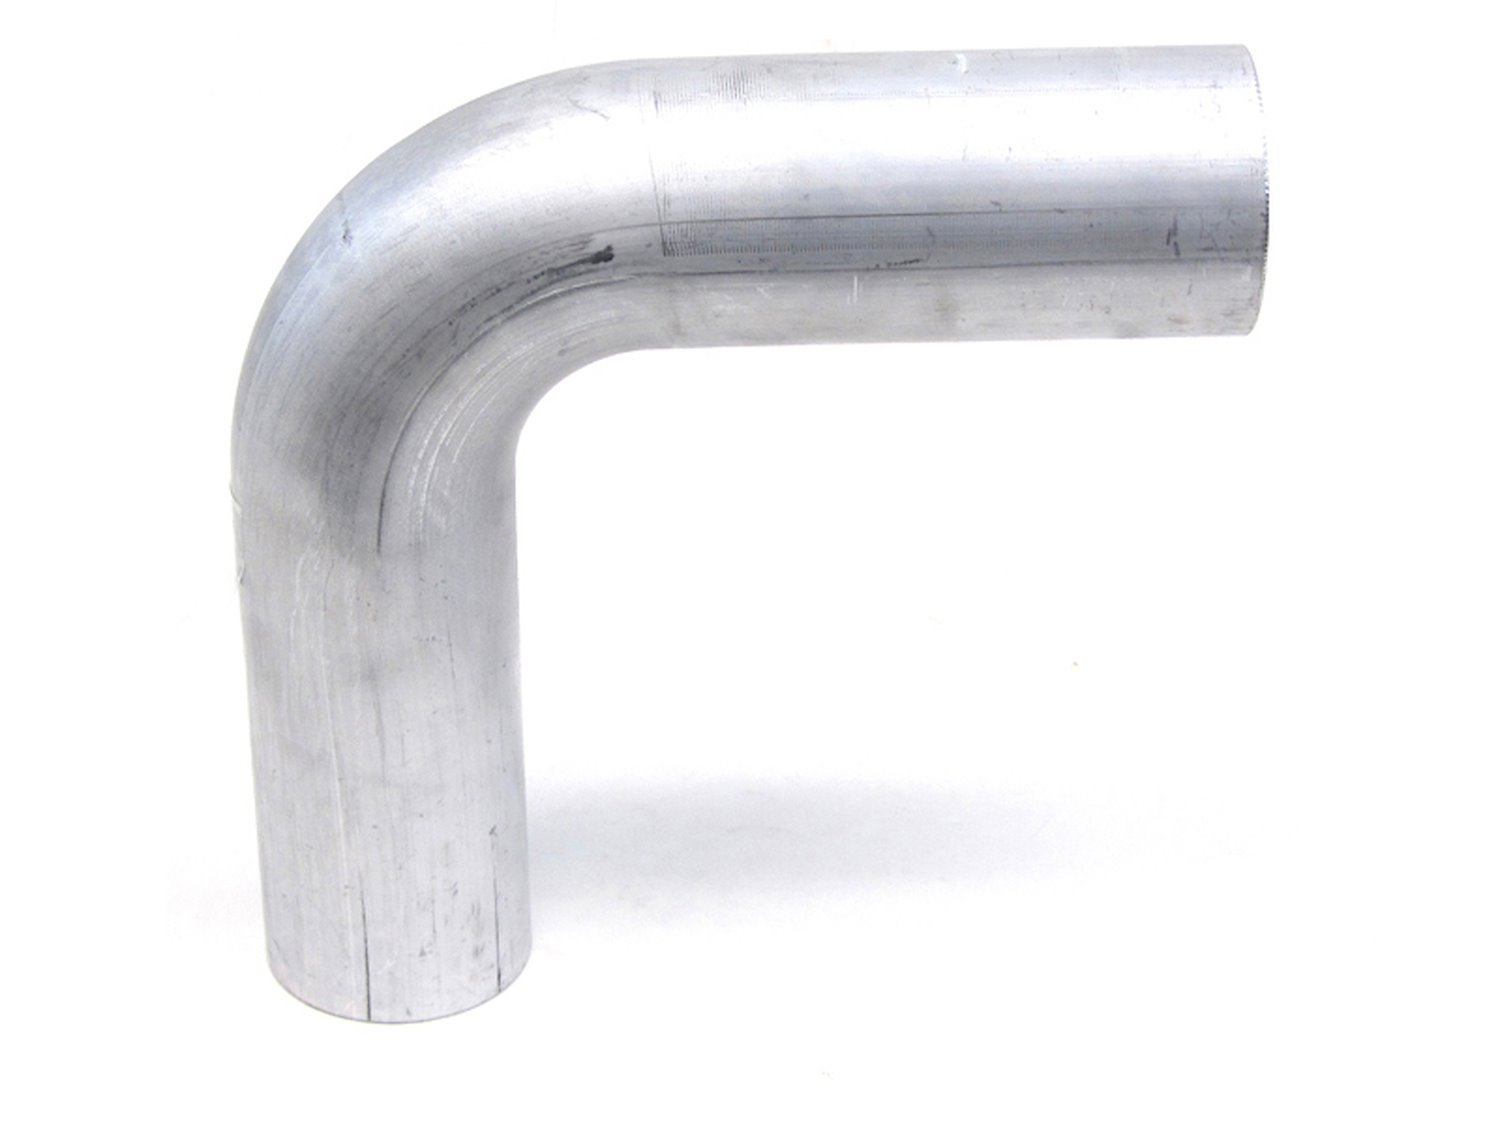 AT90-312-CLR-5 Aluminum Elbow Tube, 6061 Aluminum, 90-Degree Bend Elbow Tubing, 3-1/8 in. OD, Large Radius, 5 in. CLR